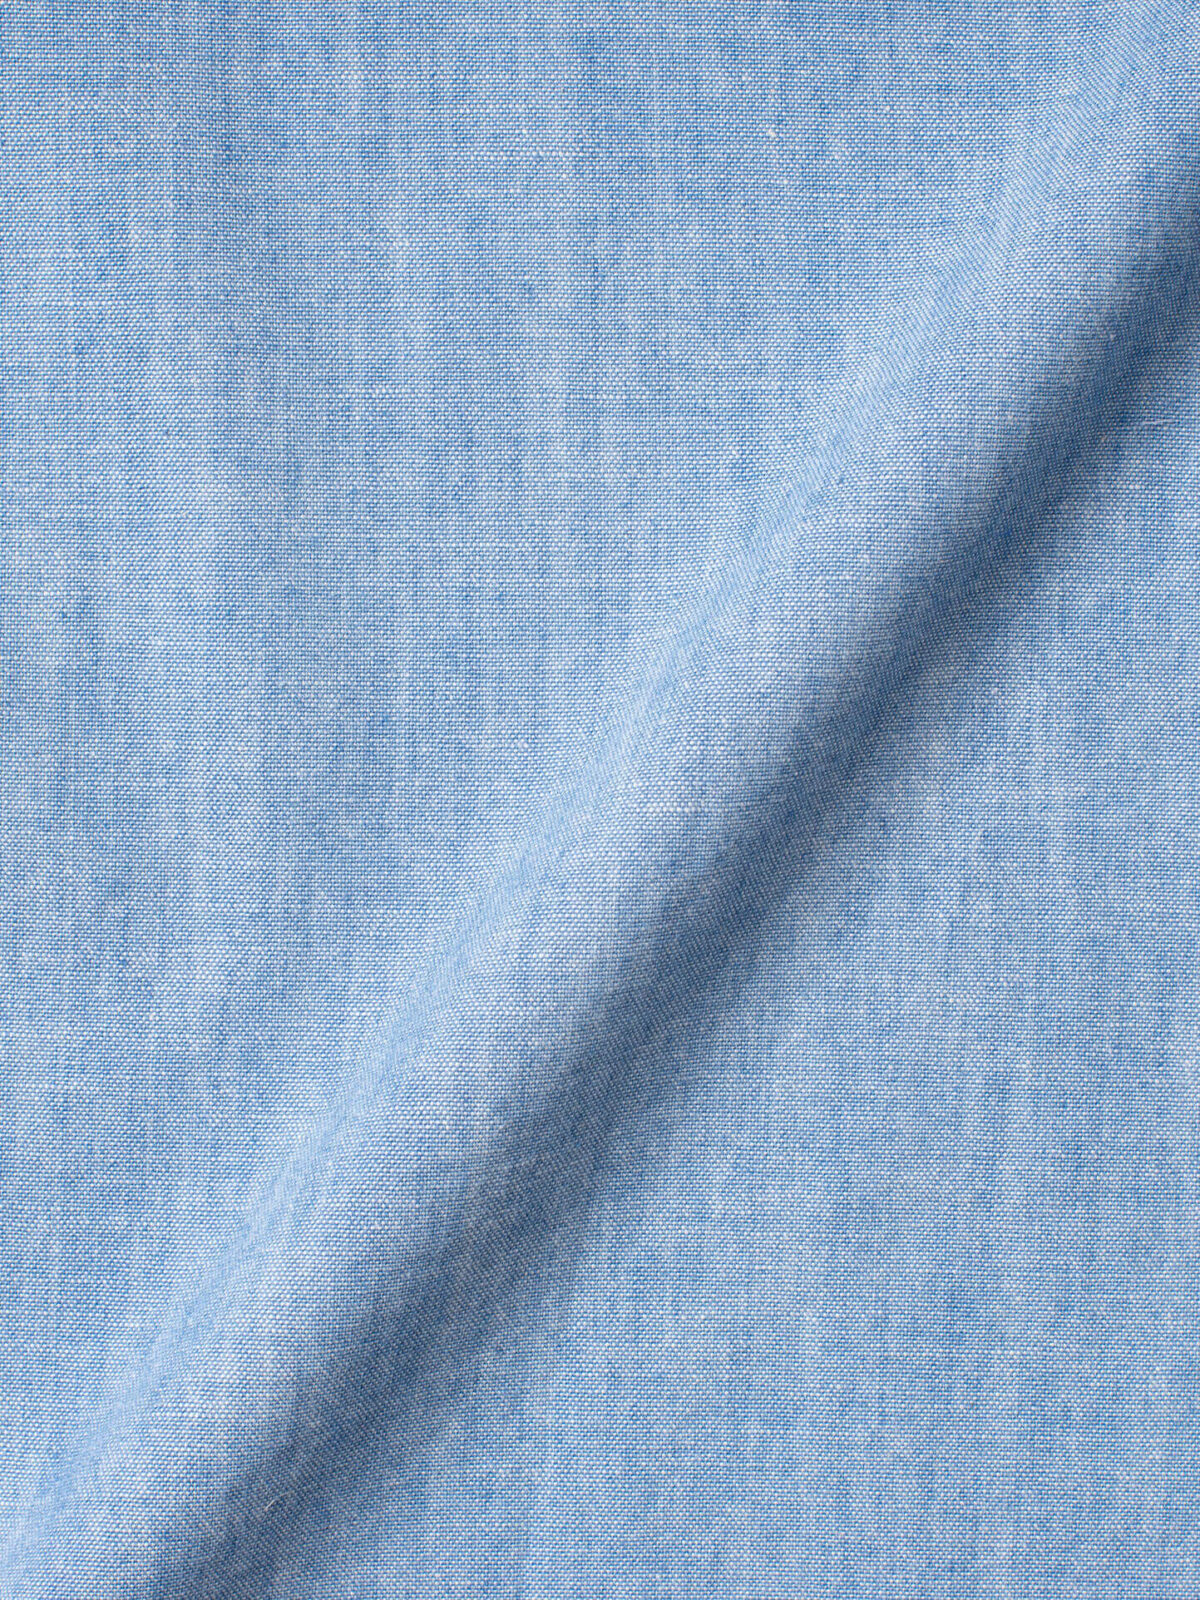 Premium Photo  Beautiful blue denim indigo fabric texture.